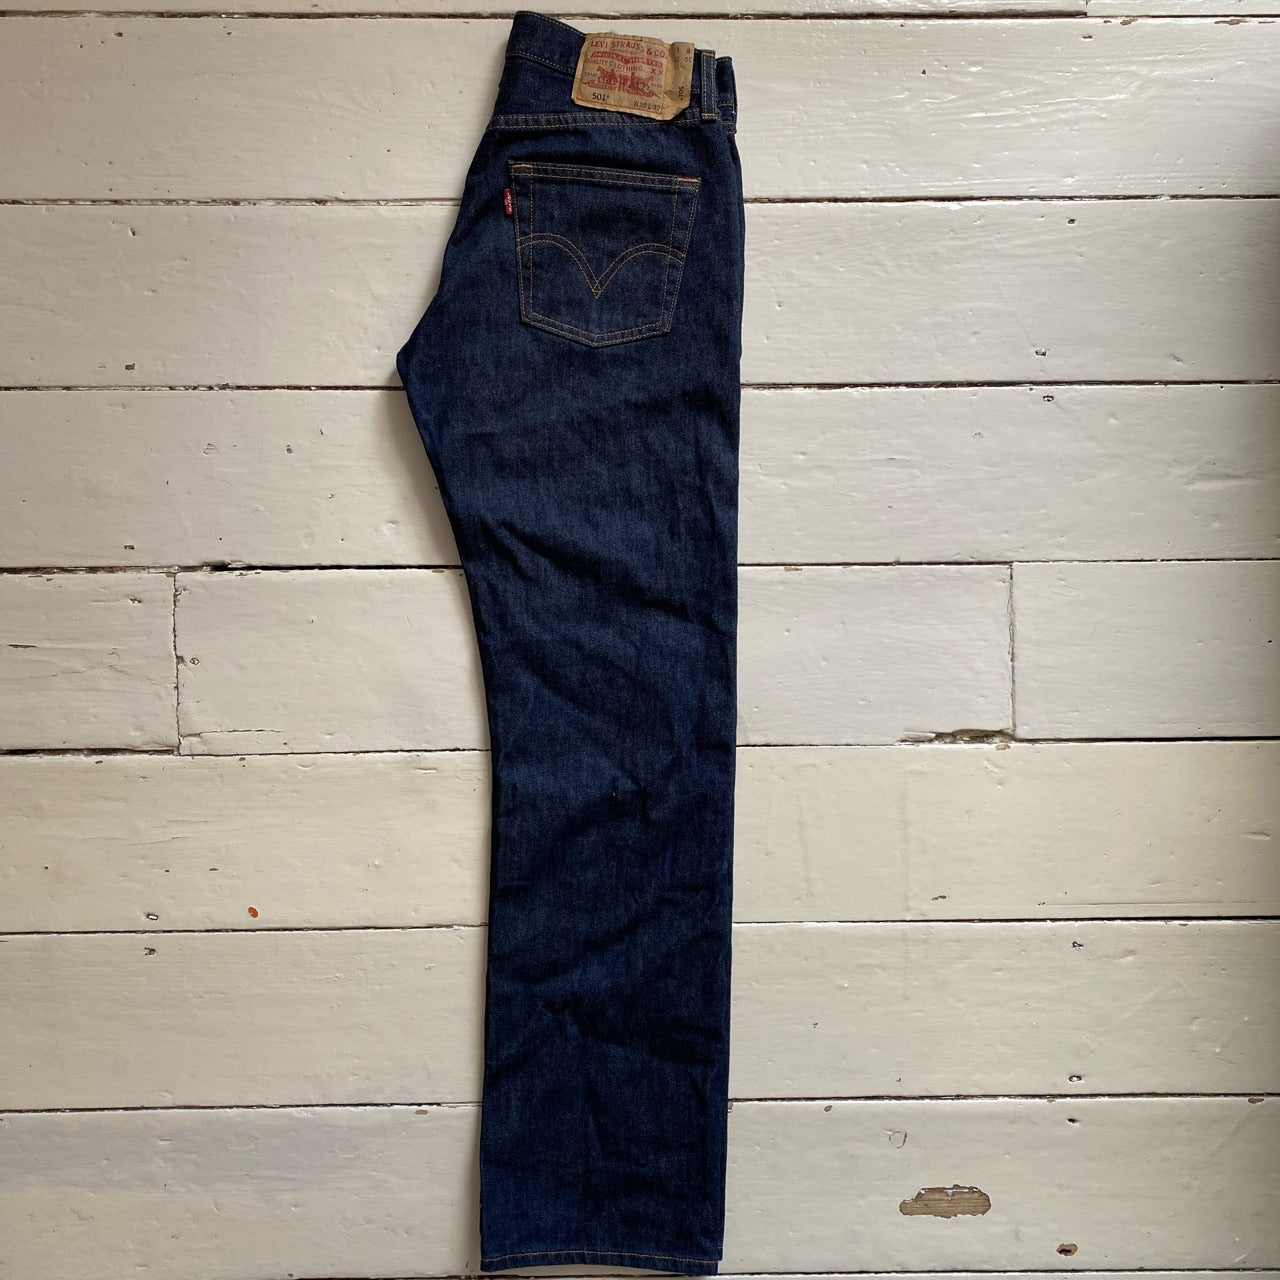 Levis 501 Blue Jeans (30/32)